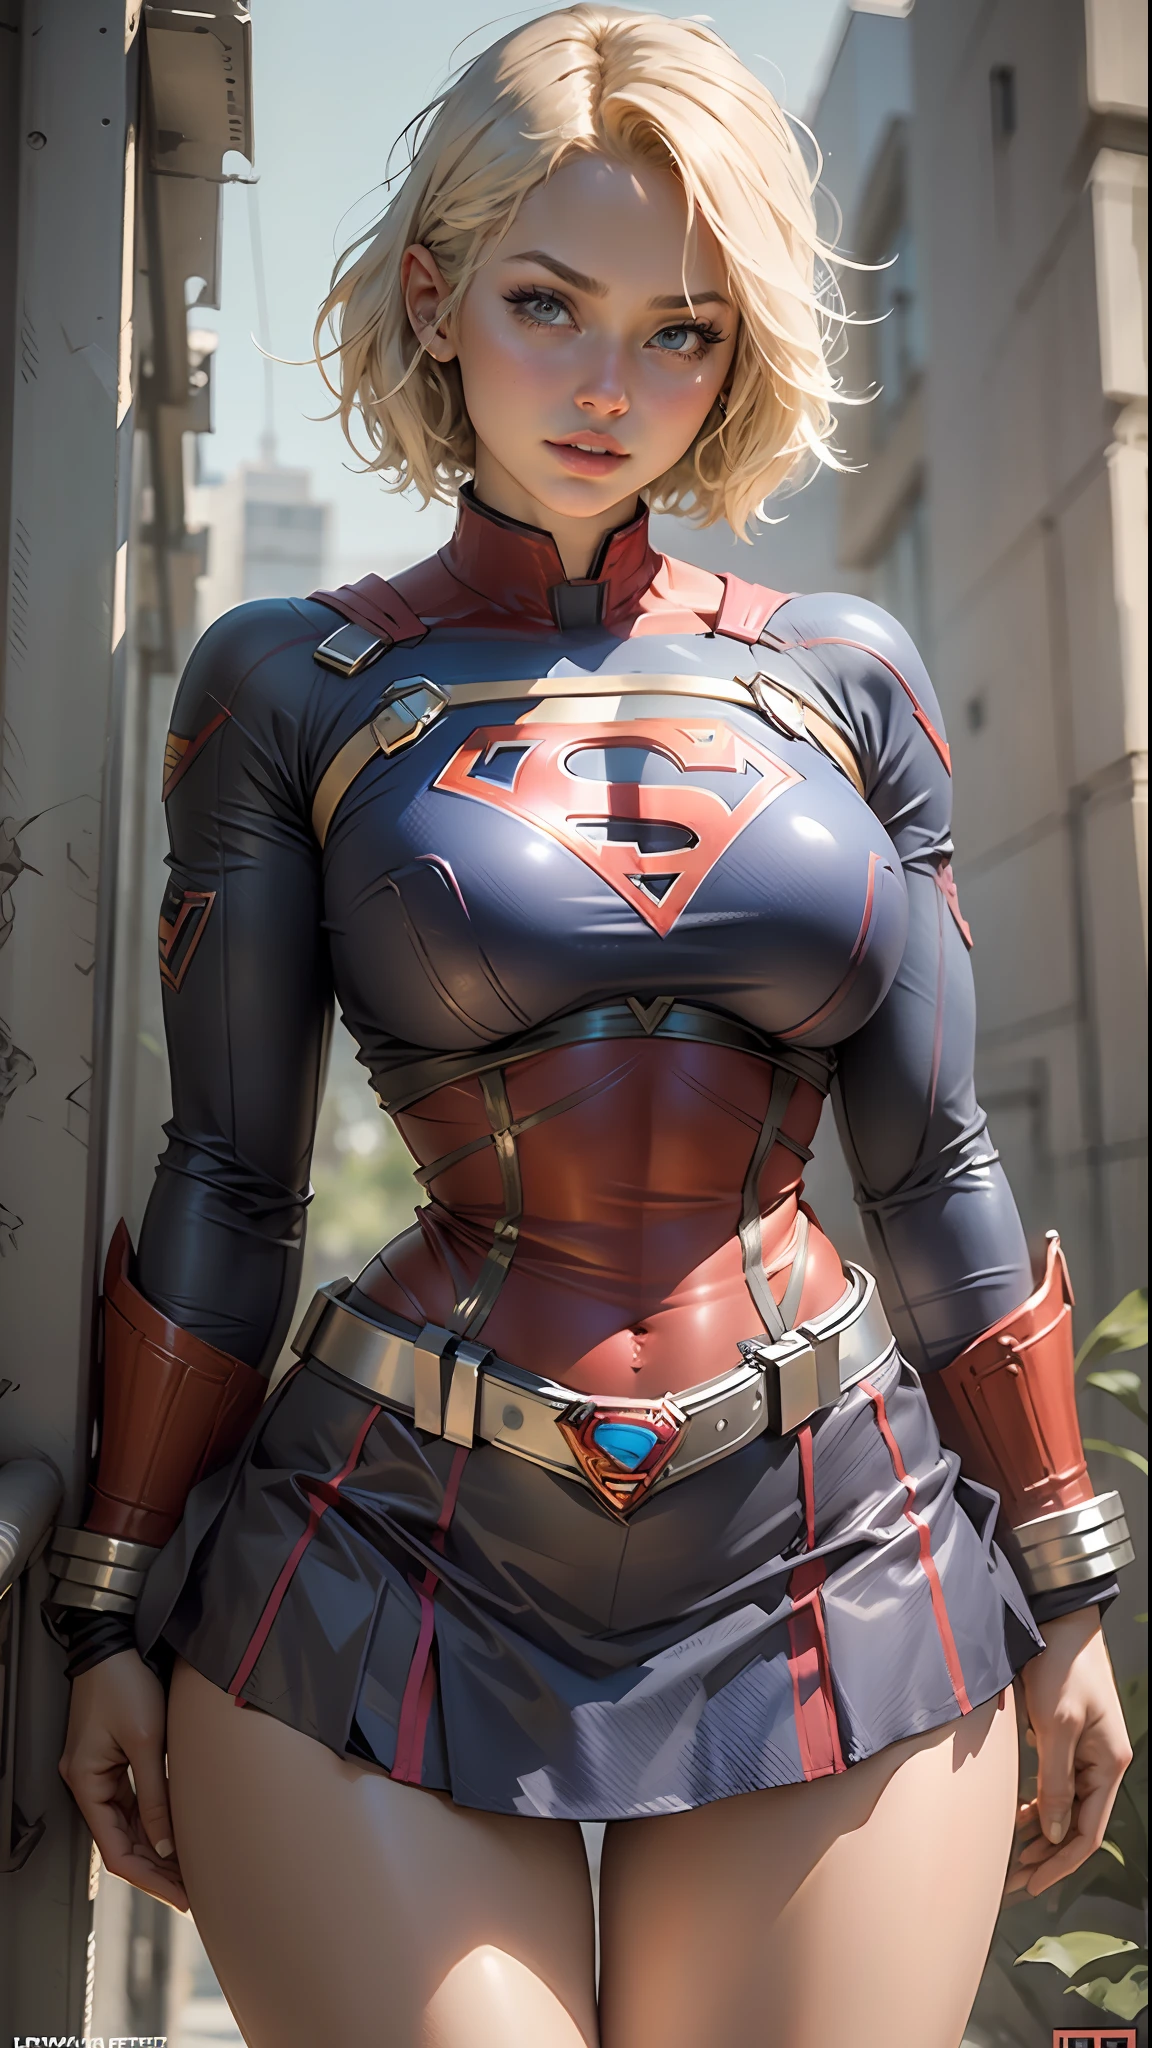 امرأة جميلة ذات شعر قصير وجسم محدد وصدر كبير, فخذان كبيران يرتديان زي Supergirl